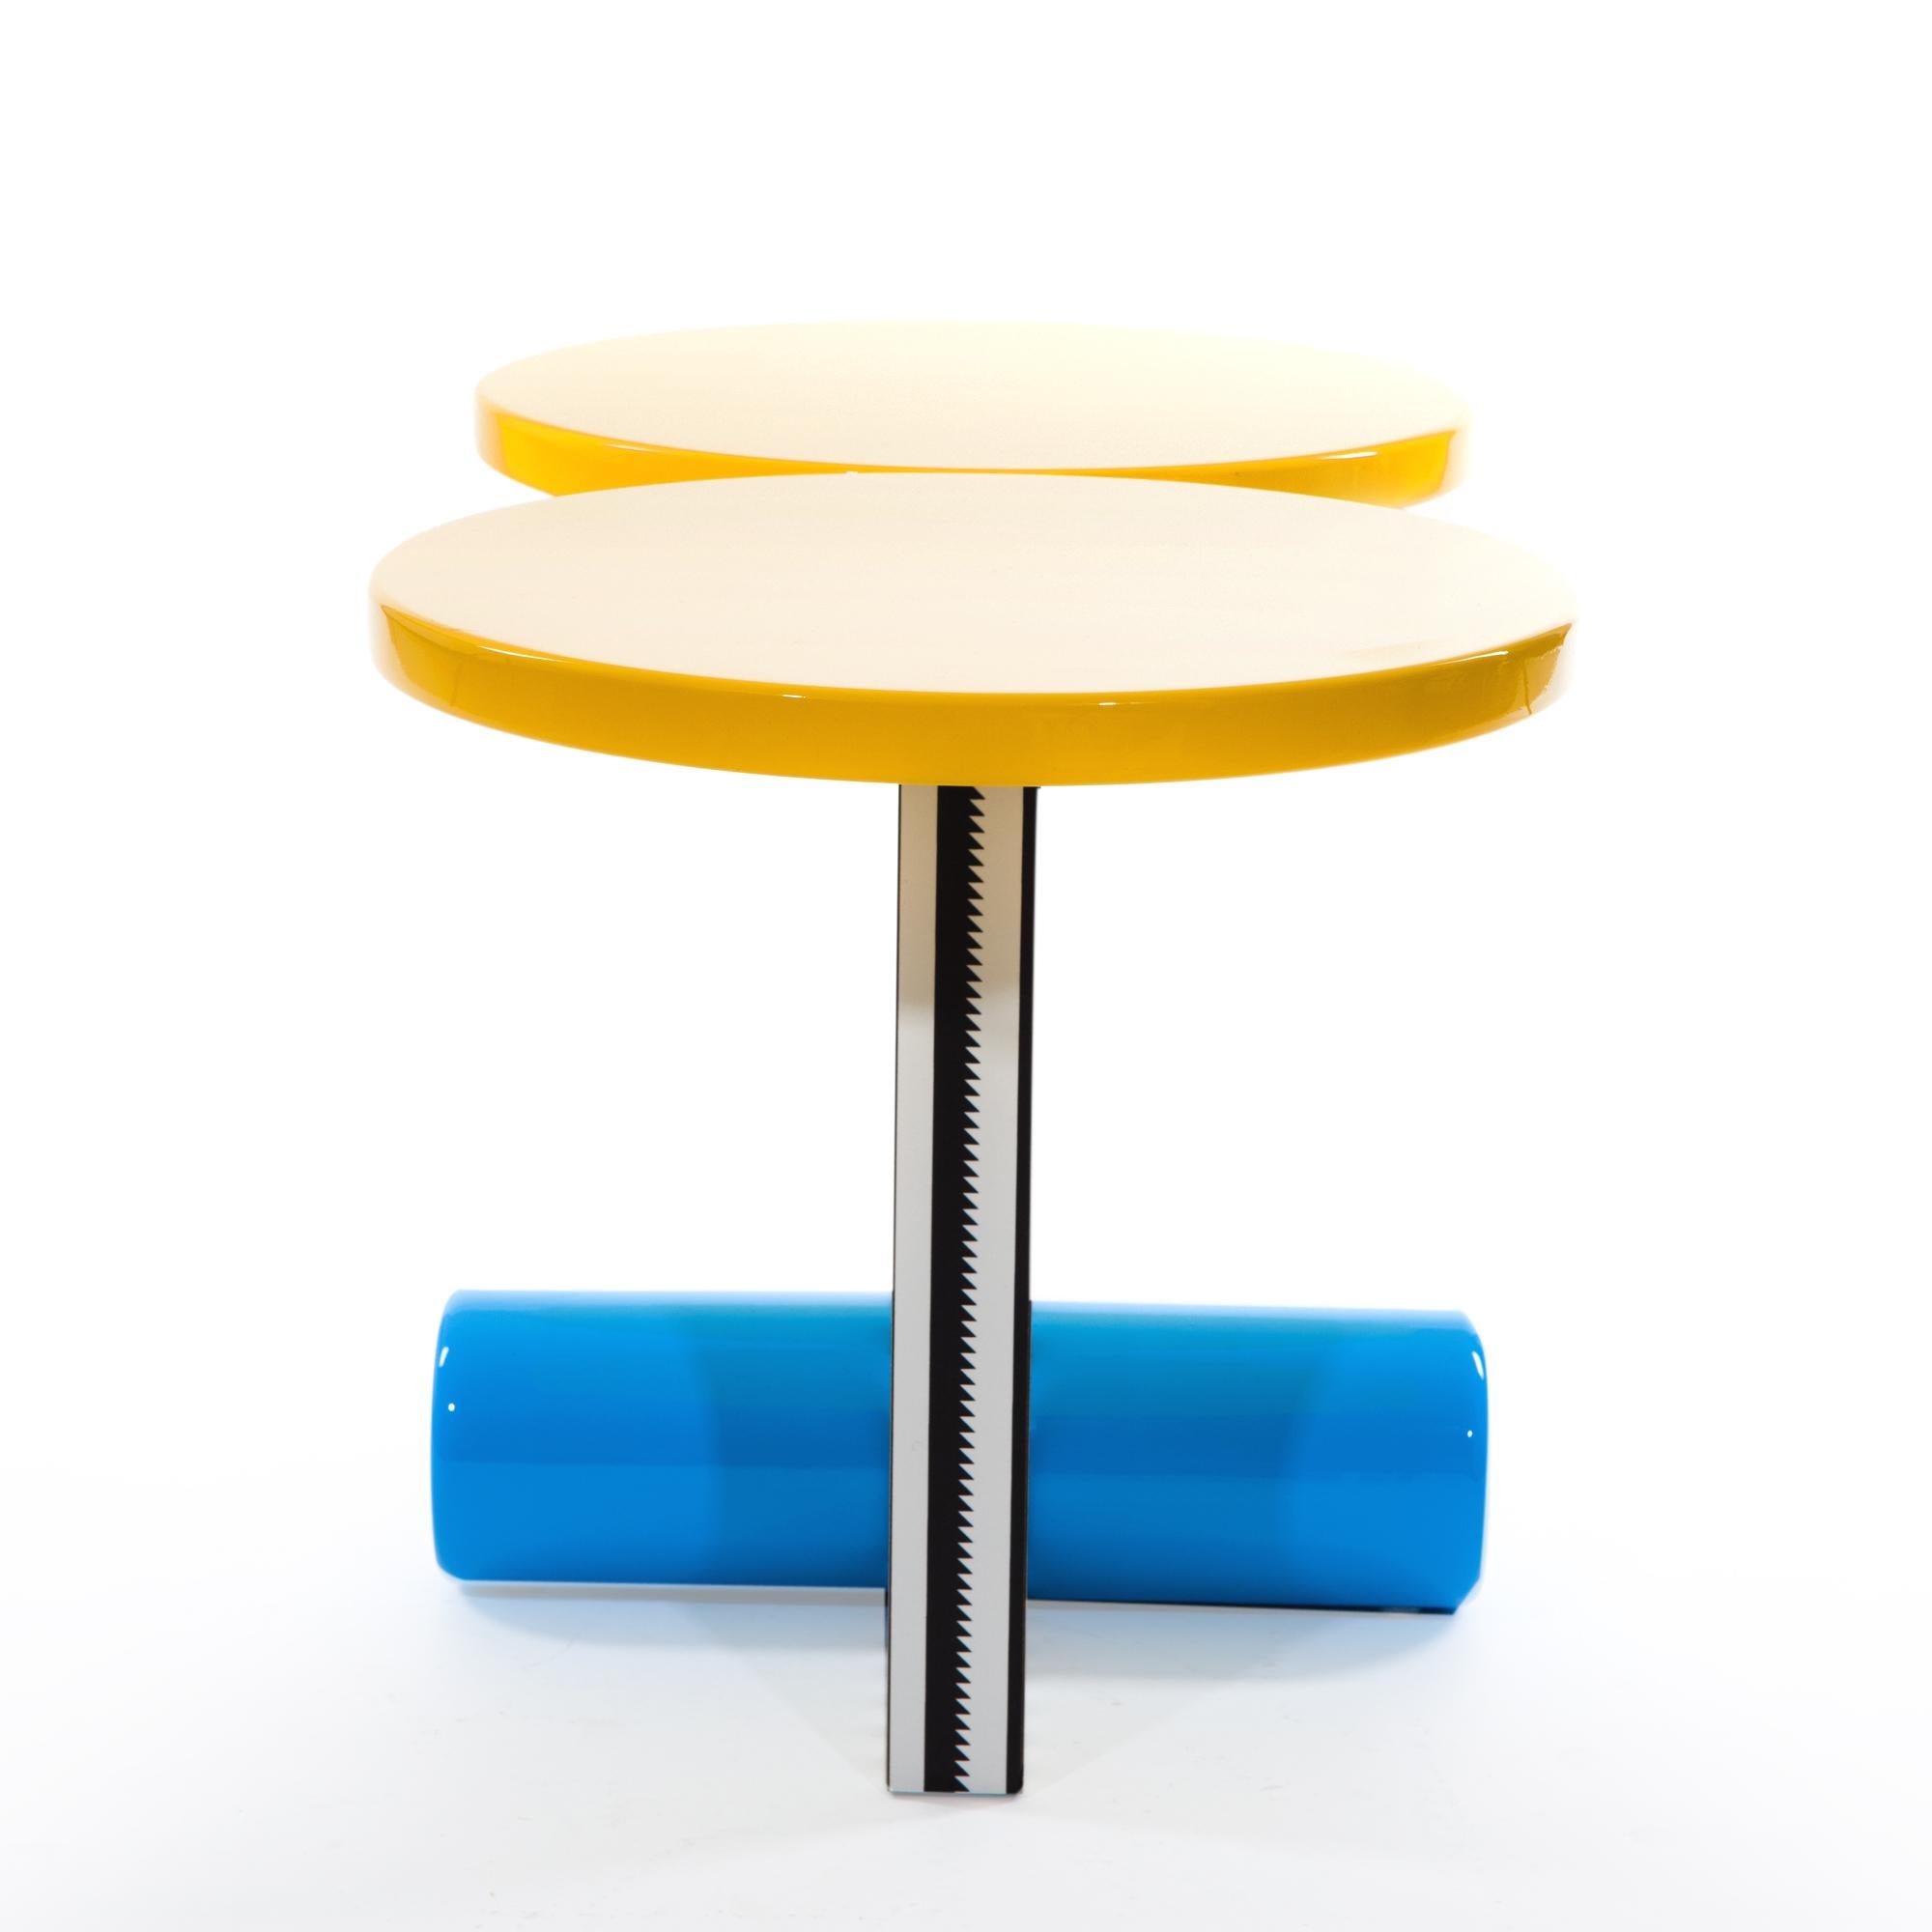 Il tavolino Polar è stato originariamente progettato da Michele de Lucchi nel 1984 per Memphis Milano. È realizzato in laminato plastico e legno laccato.

Michele de Lucchi è nato nel 1951 a Ferrara e si è laureato in architettura a Firenze. Durante